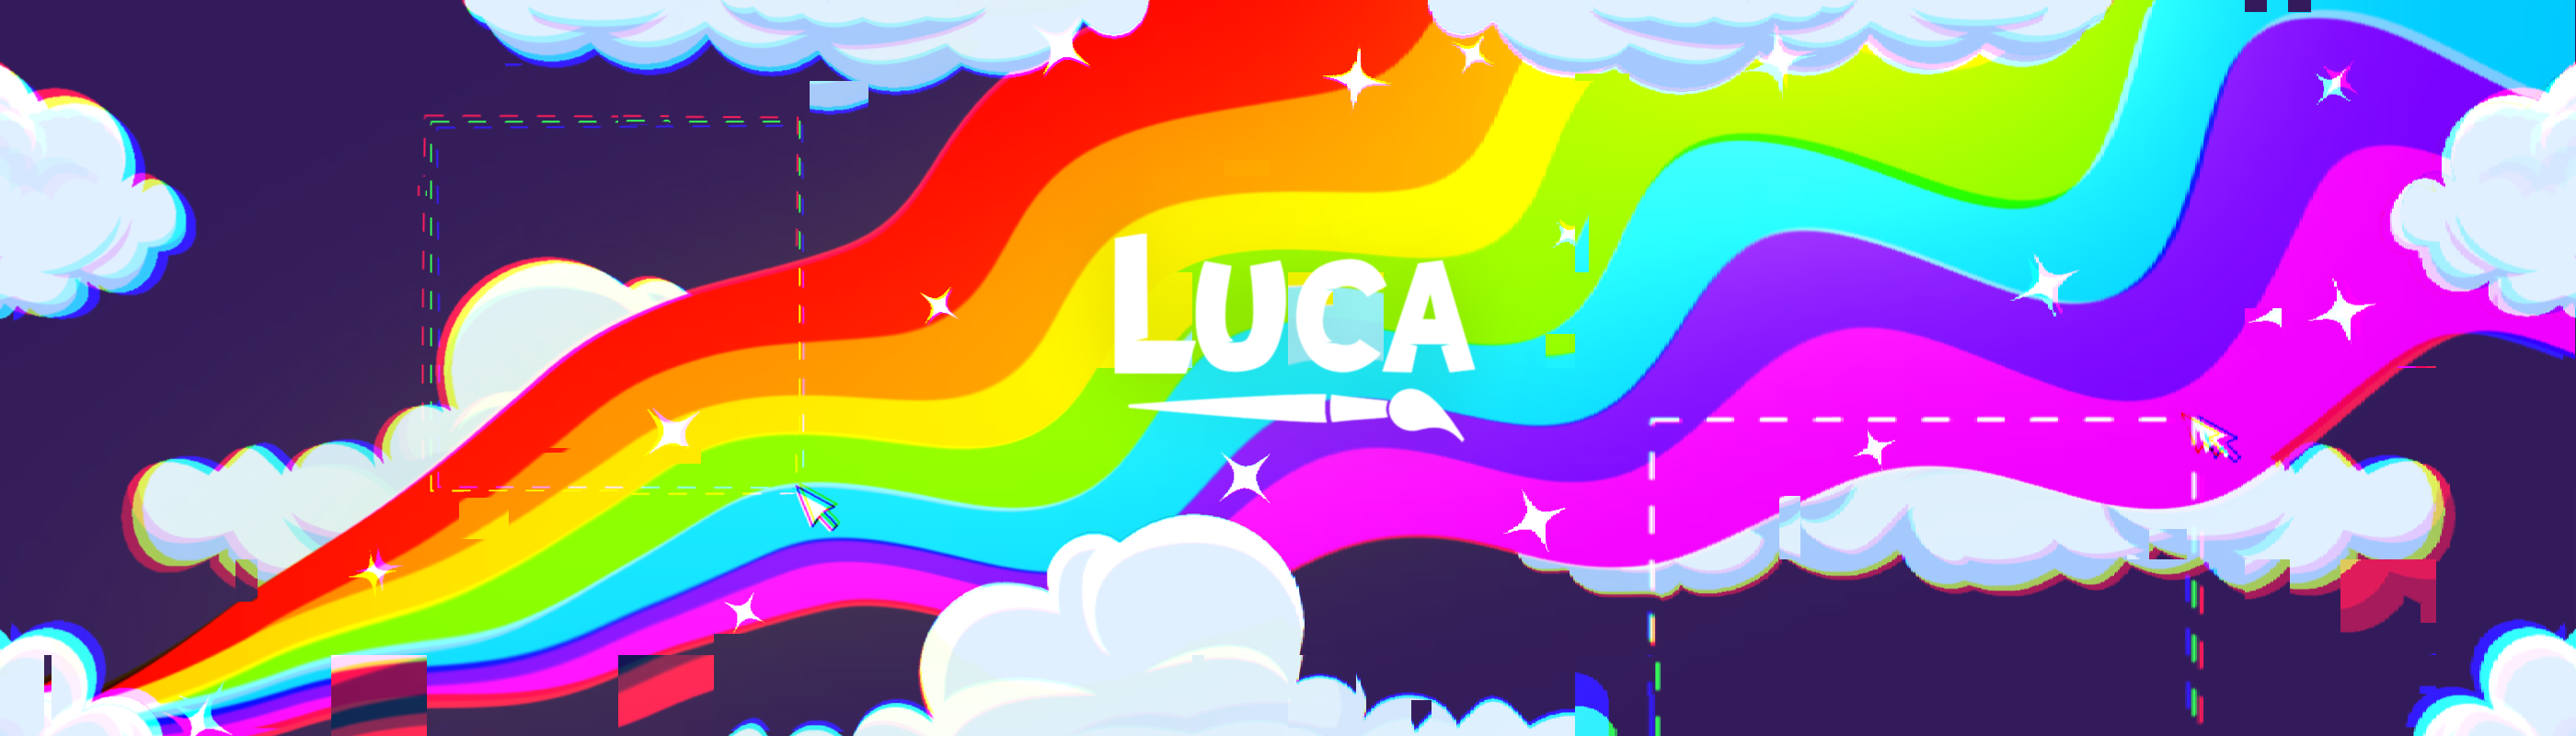 Luca's World banner